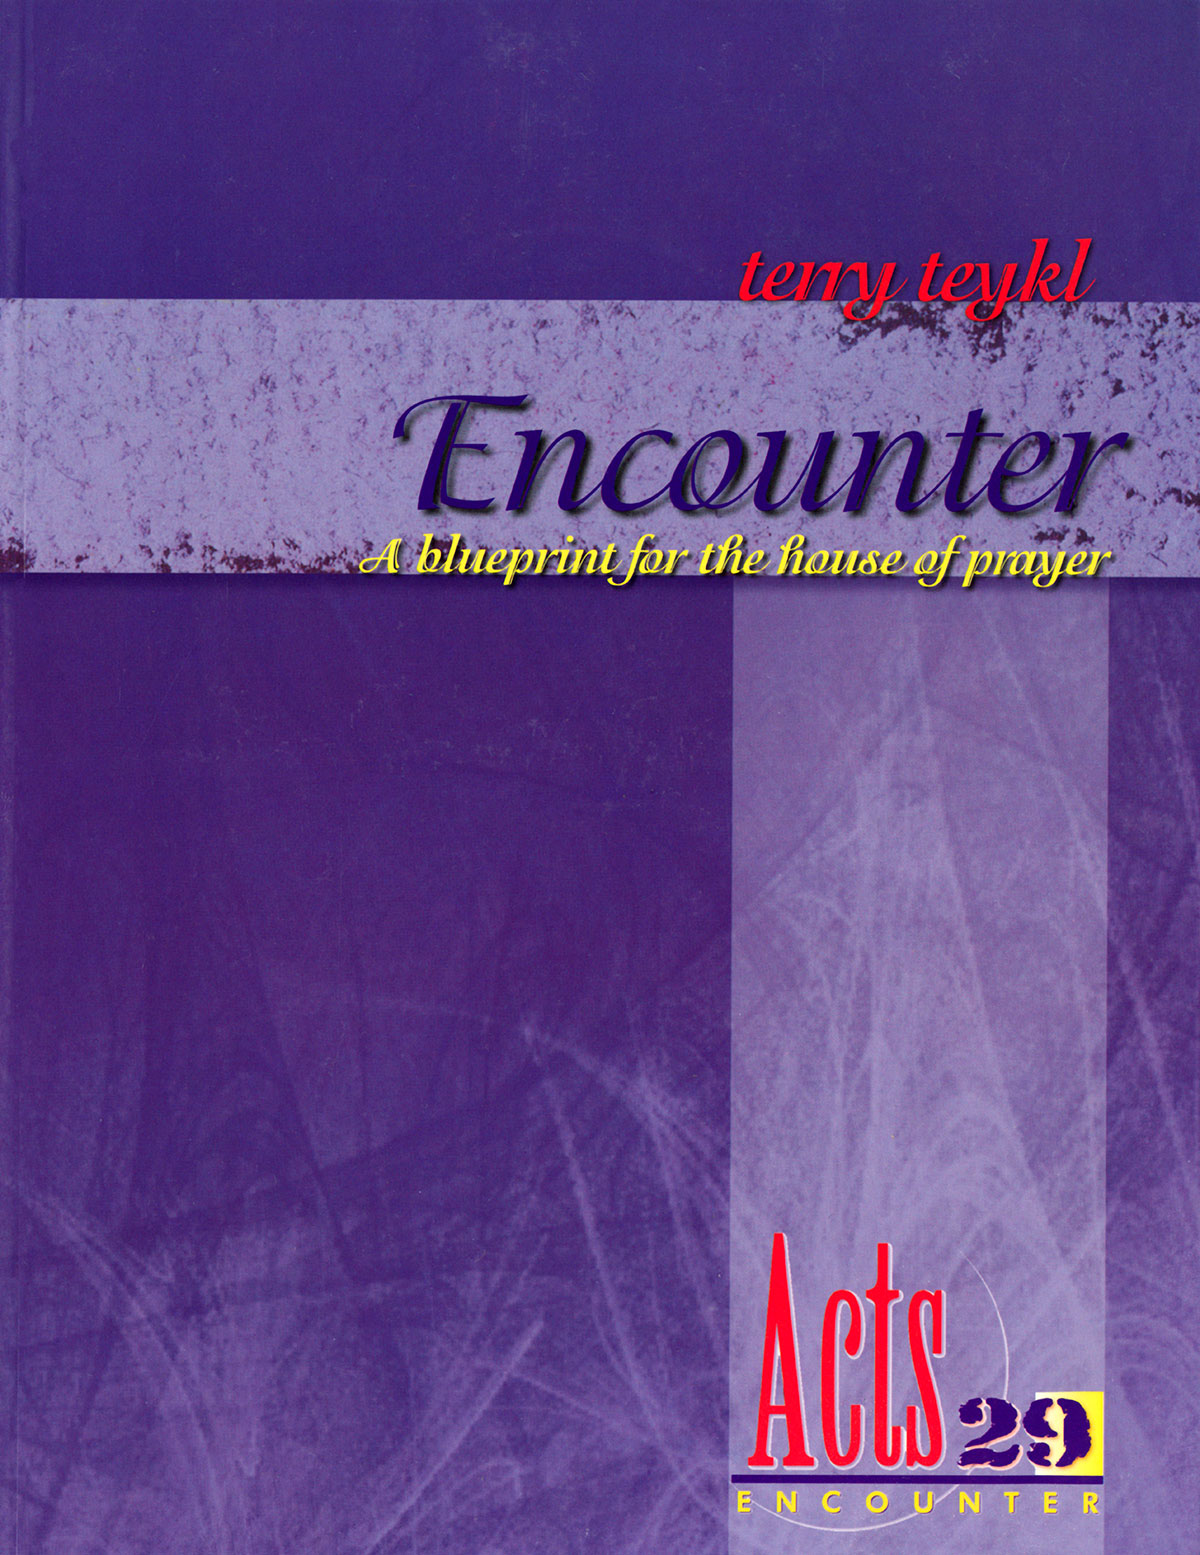 alt="encounter, blueprint for a house of prayer, book"